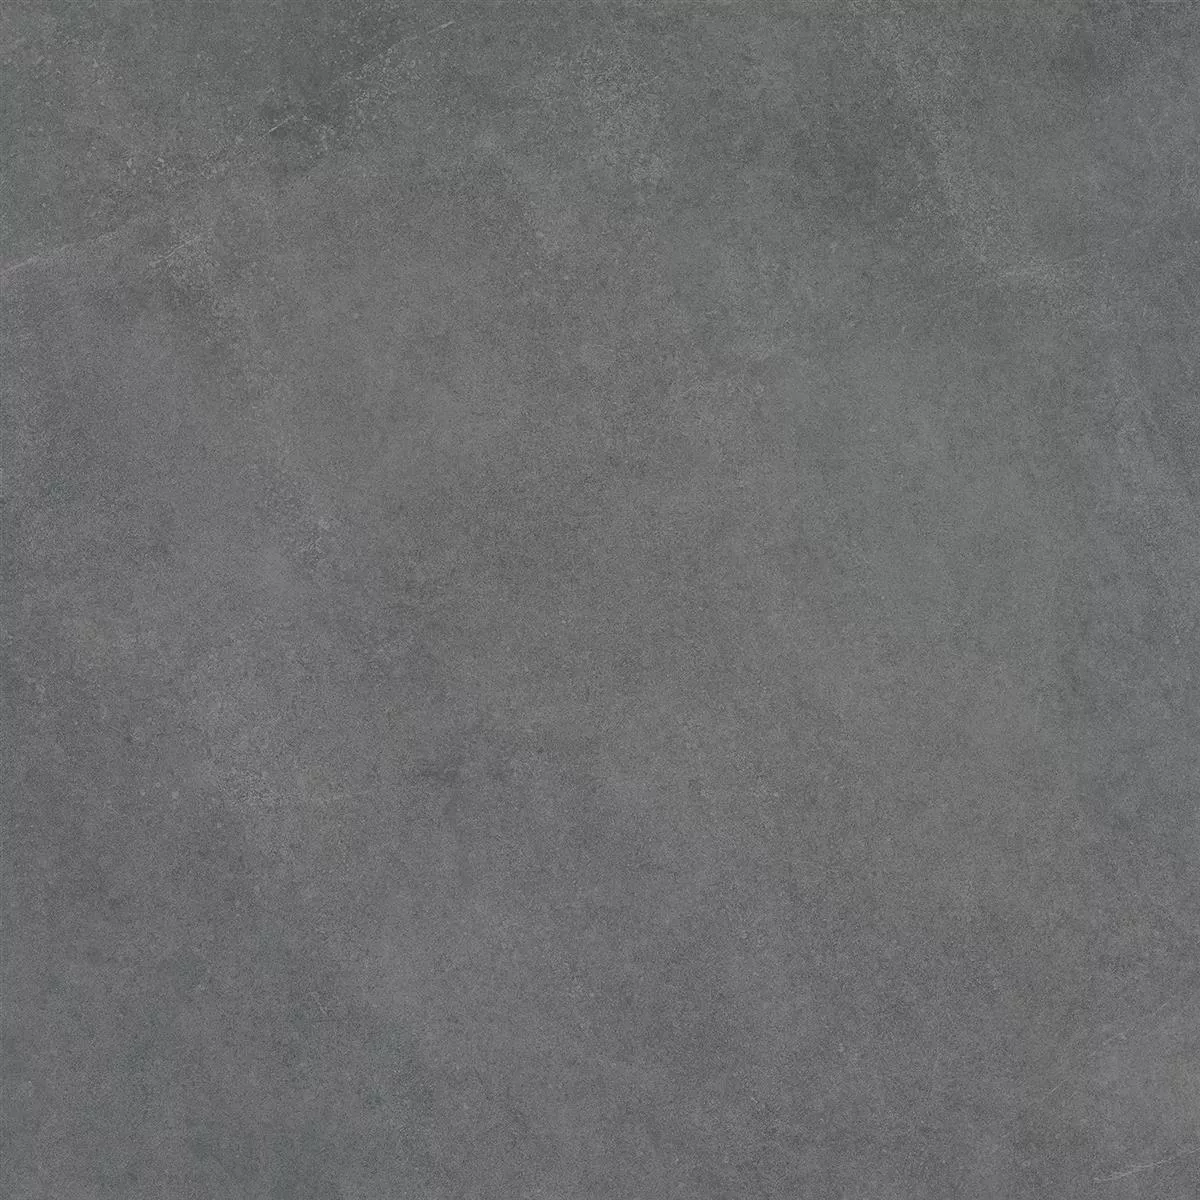 Πρότυπο Πλάκες Εράντας Εμφάνιση Tσιμέντου Newland Ανθρακίτης 60x60x3cm